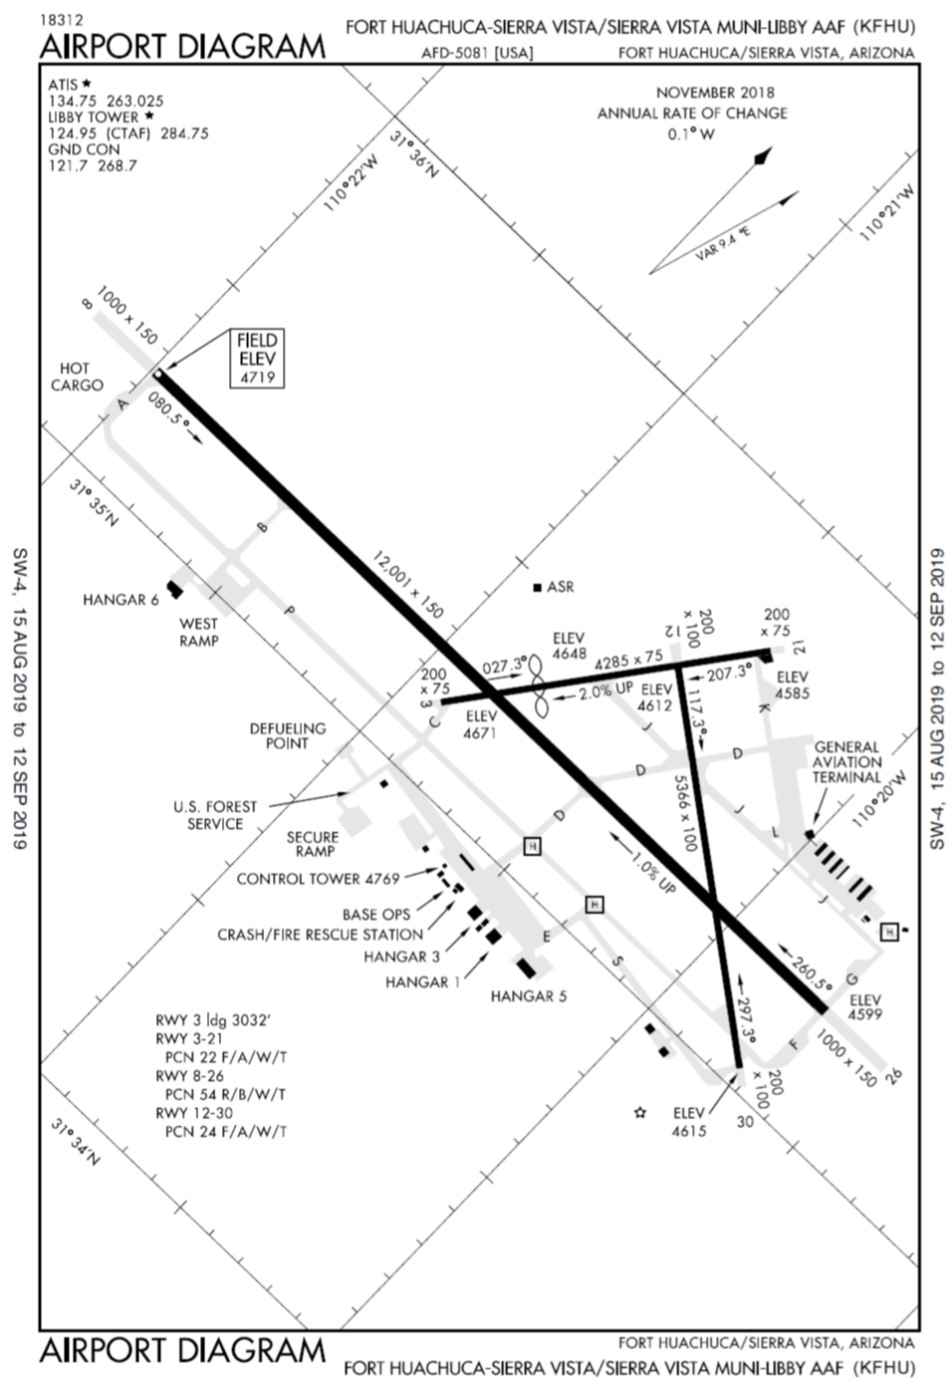 arizona airport focus sierra vista airport diagram 1